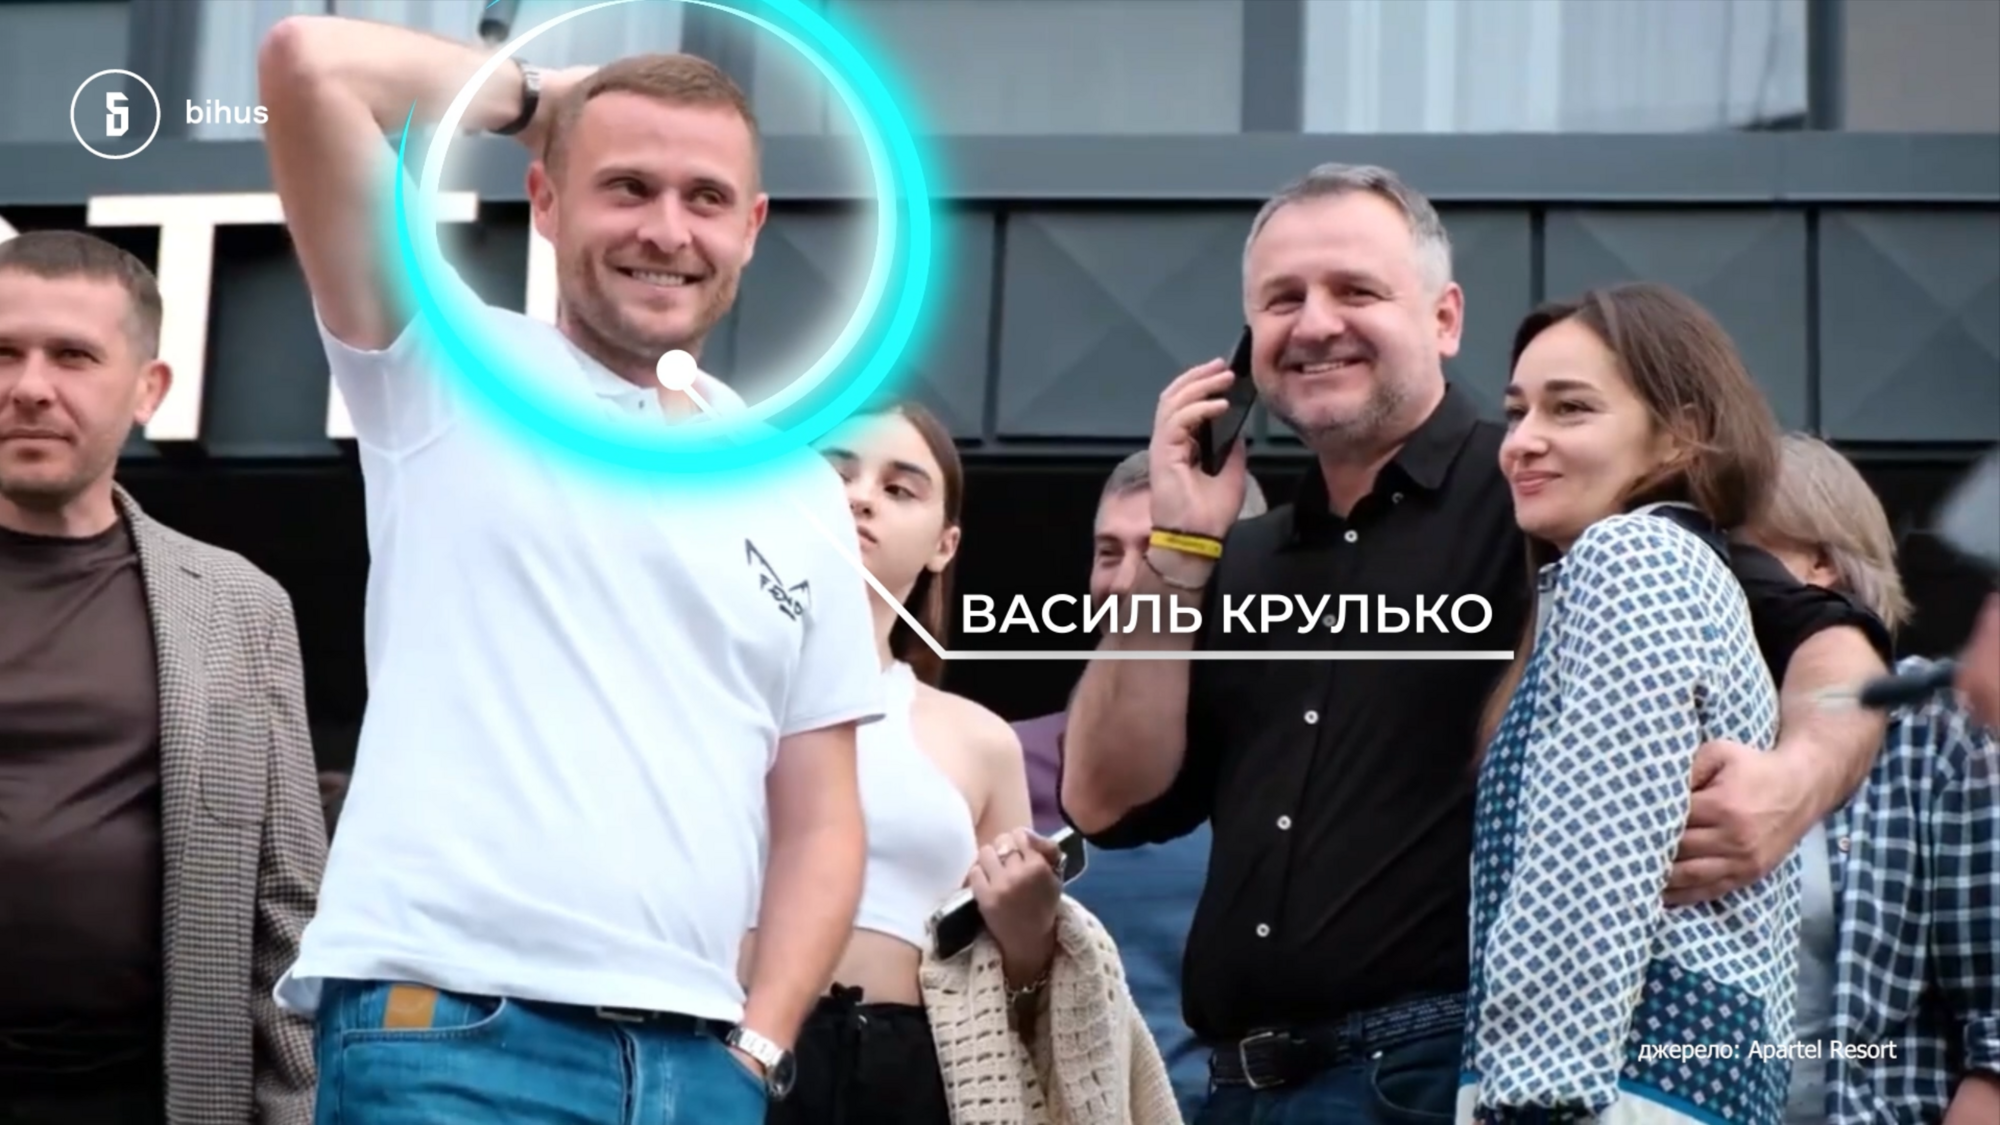 Бізнес з'явився після потрапляння до Ради: нардеп від "Батьківщини" Тимошенко Крулько потрапив у гучний  скандал. Розслідування 